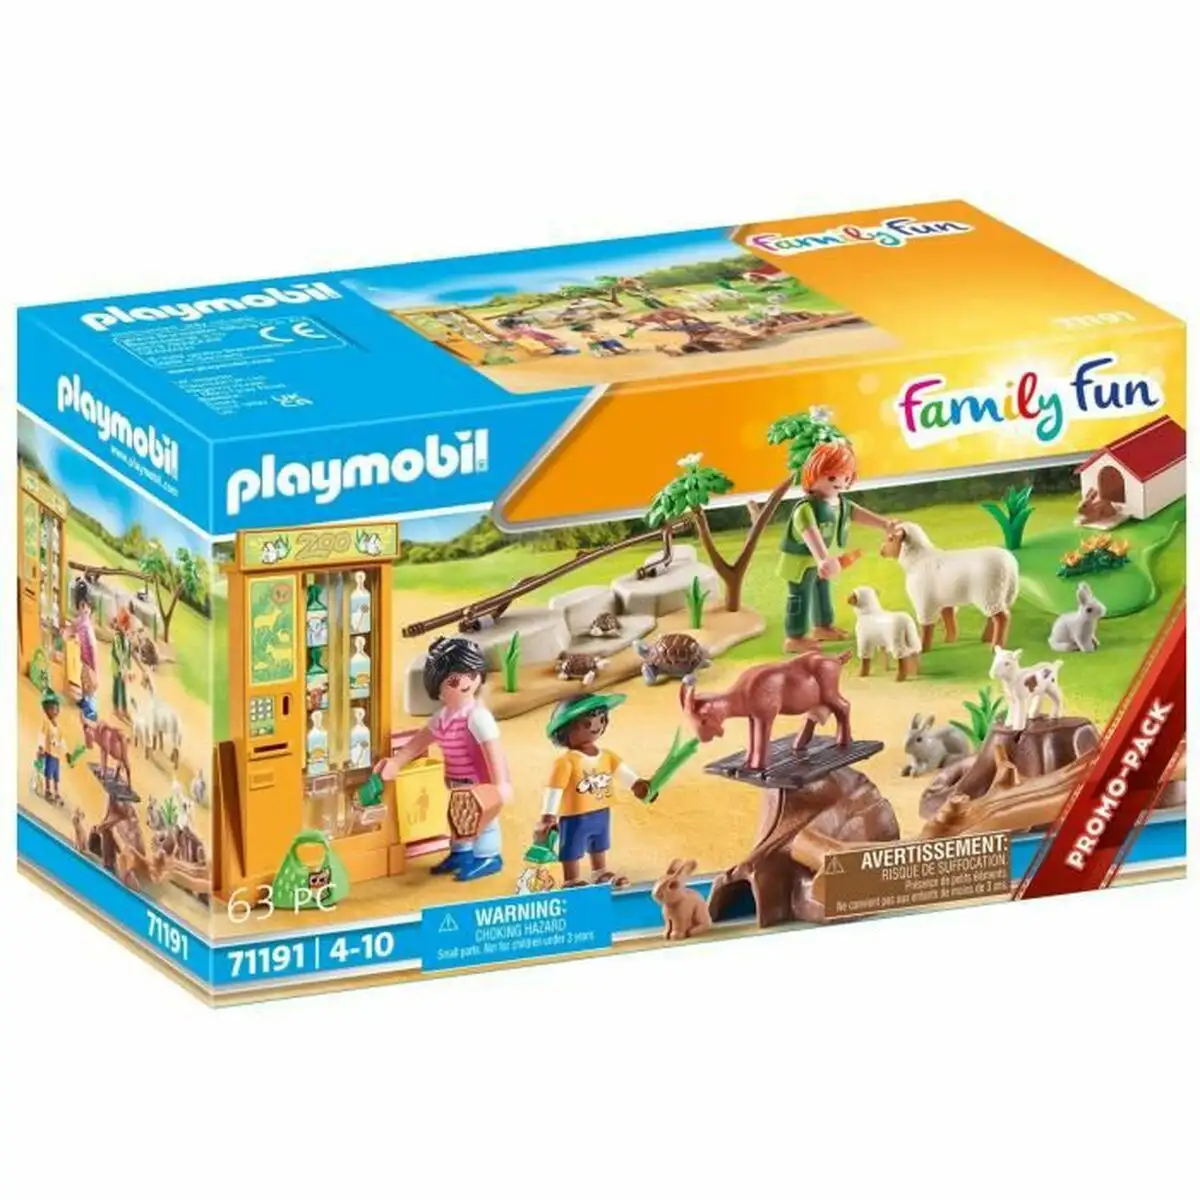 Playset playmobil family fun educational farm 71191 63 pieces _9009. DIAYTAR SENEGAL - Votre Destination pour un Shopping Unique. Parcourez notre catalogue et trouvez des articles qui vous inspirent et vous édifient.